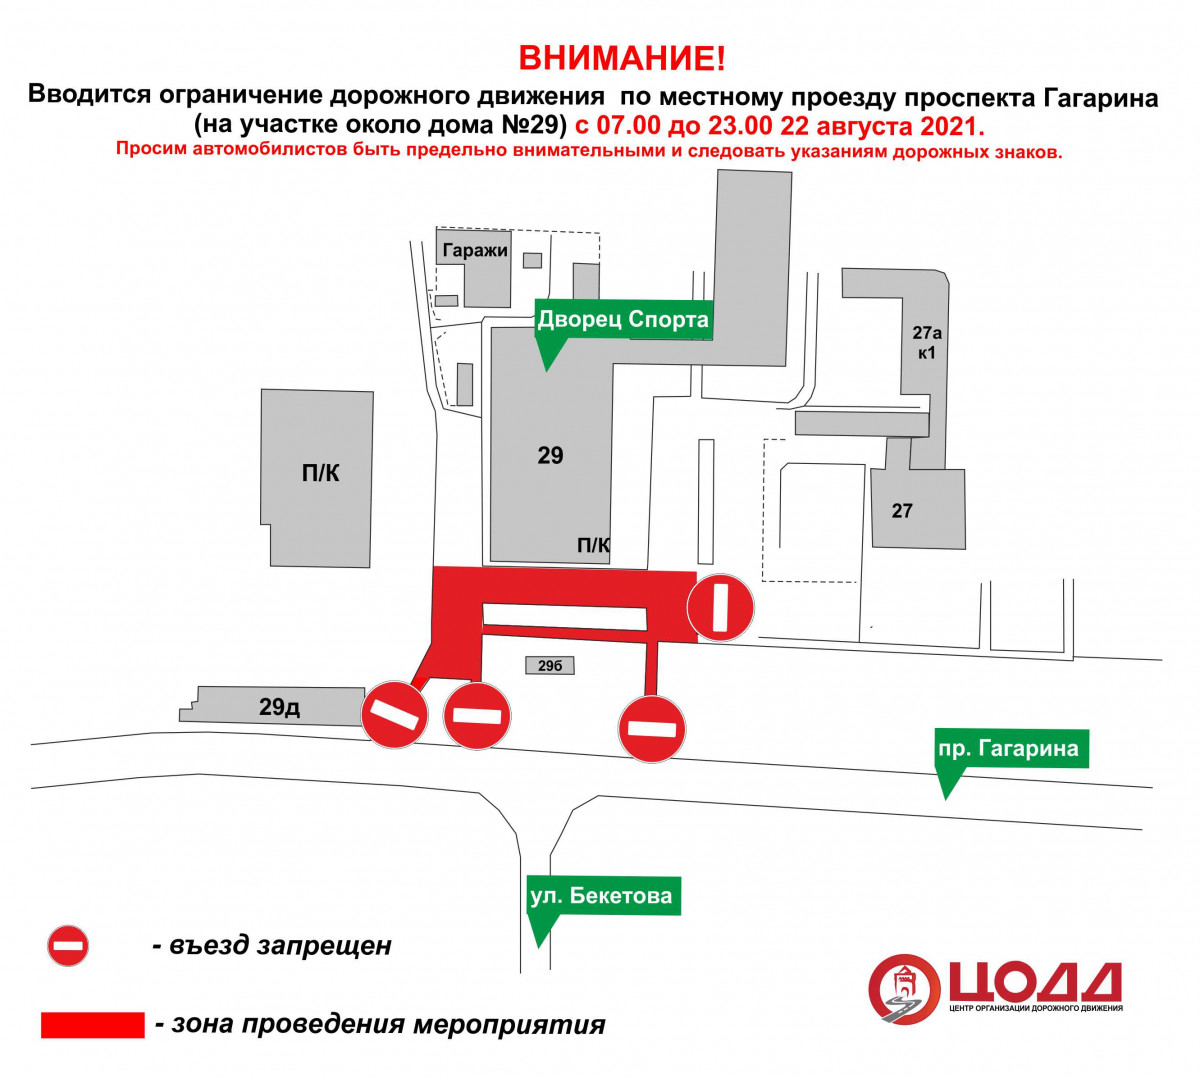 Движение по местному проезду проспекта Гагарина ограничат в Нижнем Новгороде 22 августа